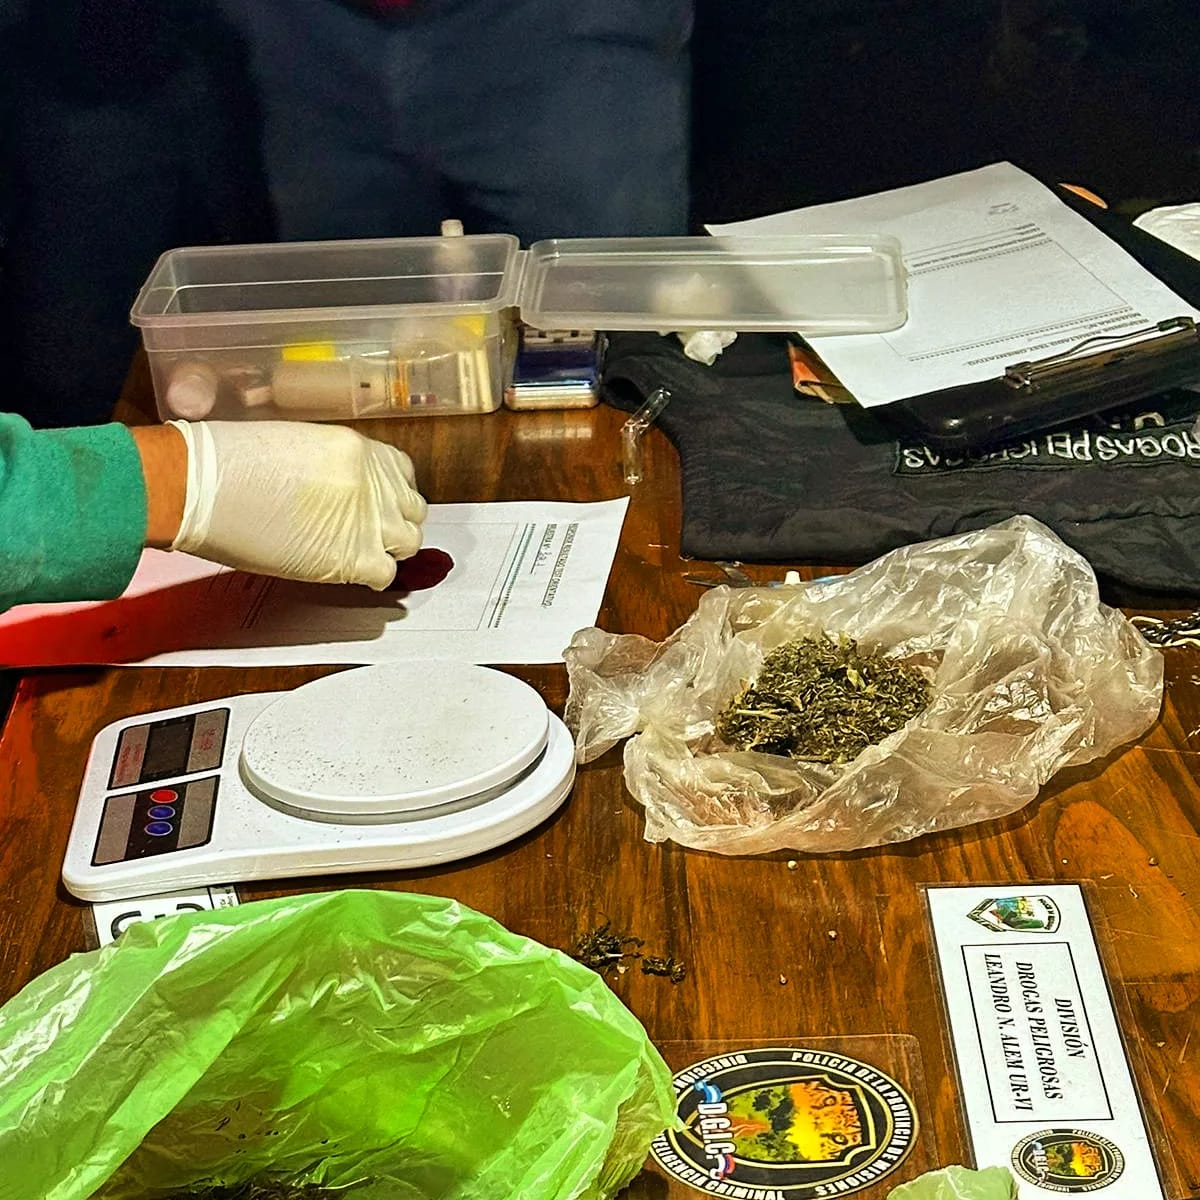 Desbarataron un "narcokiosco" en San Javier y ya son 50 los puntos de venta de drogas desarticulados por la Policía imagen-58